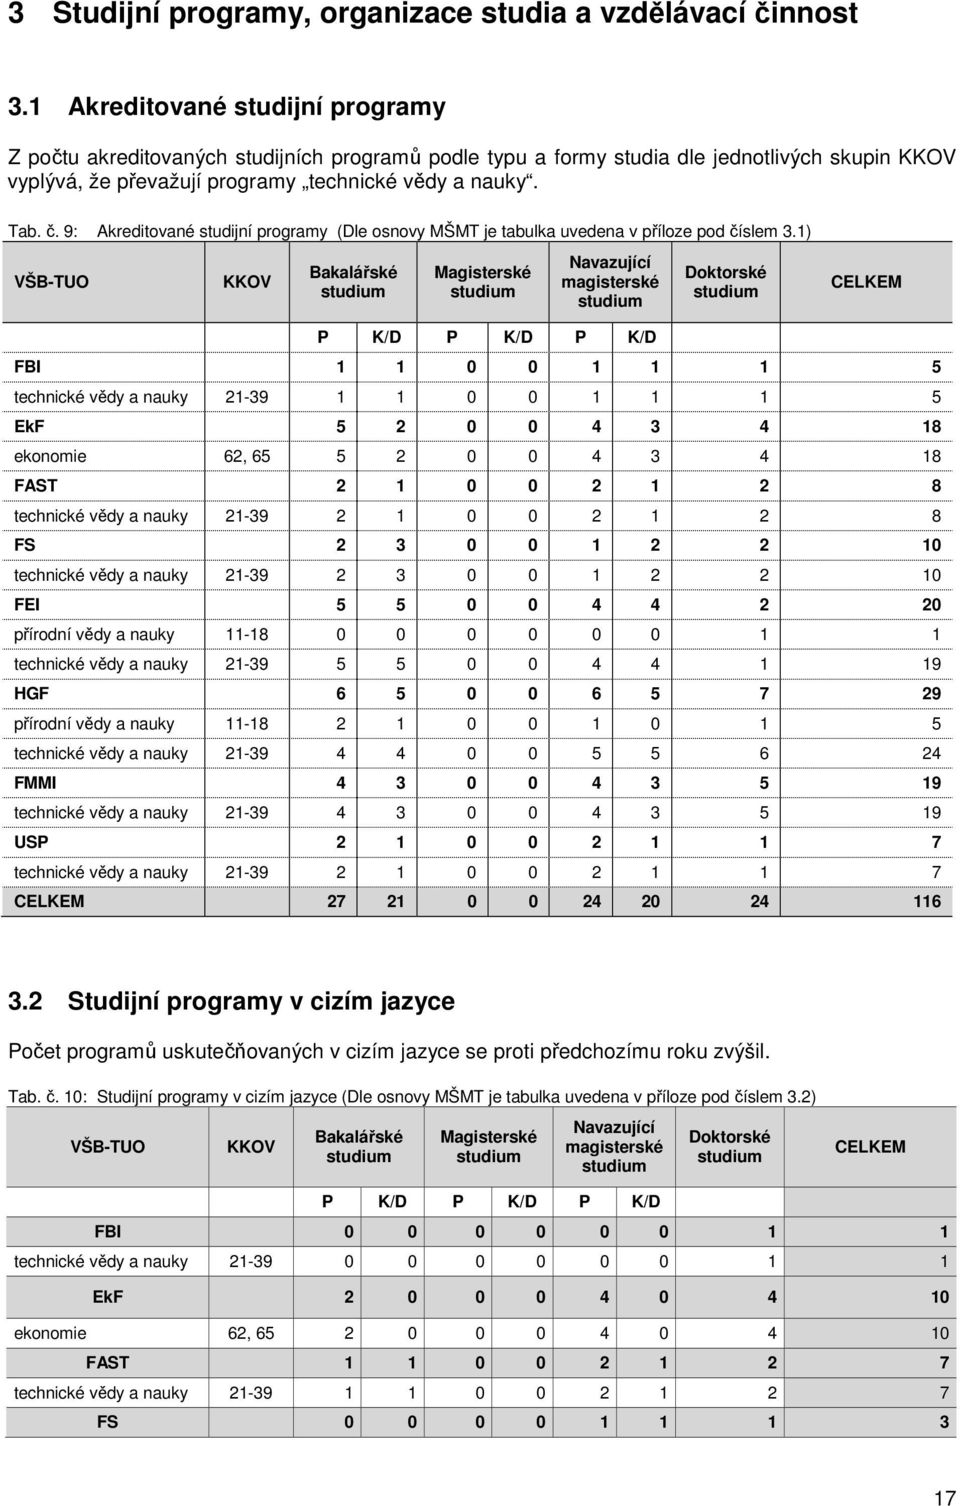 9: Akreditované studijní programy (Dle osnovy MŠMT je tabulka uvedena v příloze pod číslem 3.